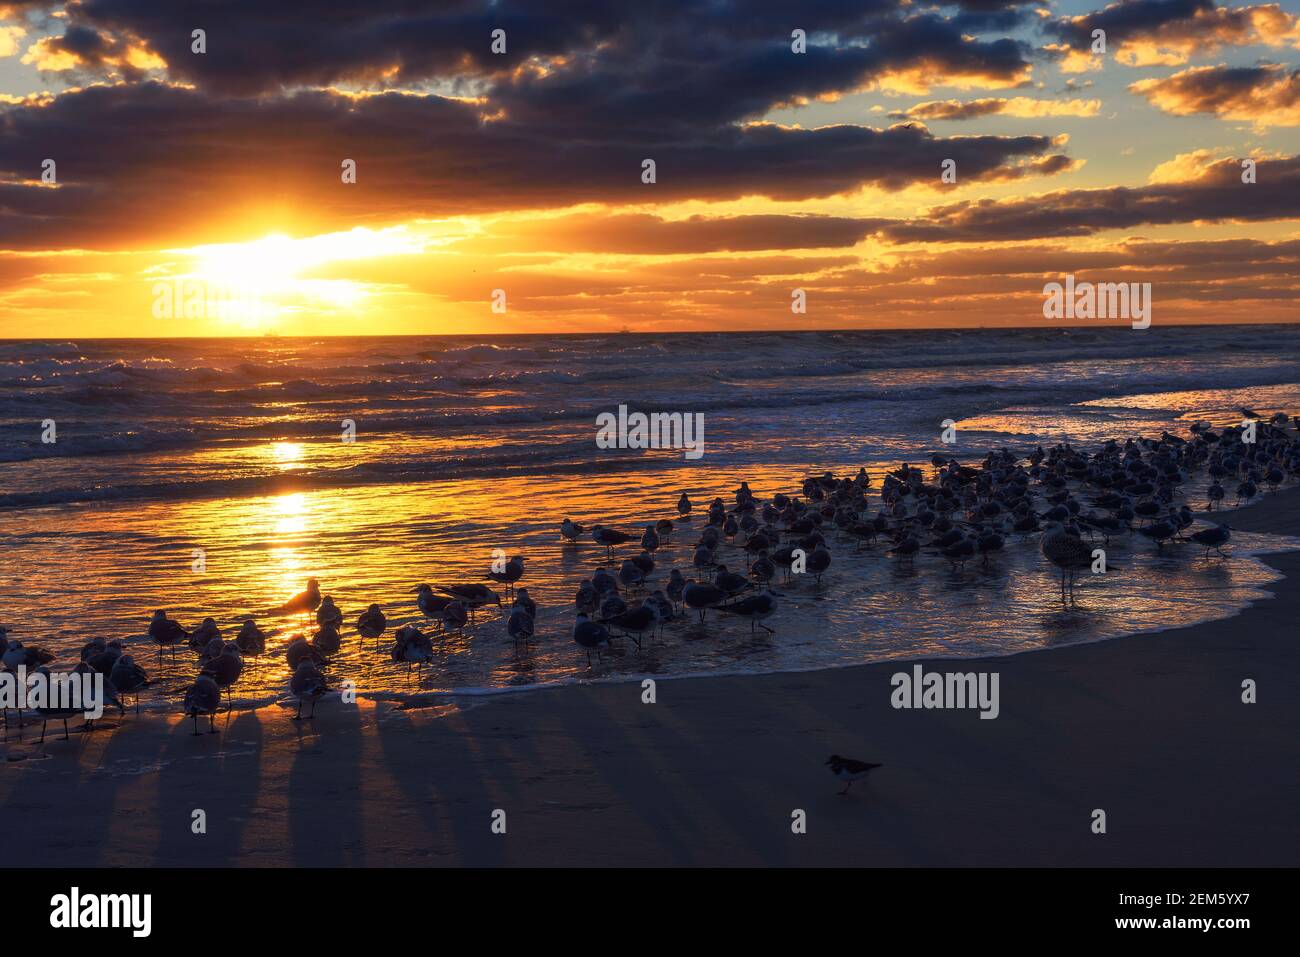 Gran rebaño de gaviotas sobre una playa de arena en Florida al atardecer Foto de stock